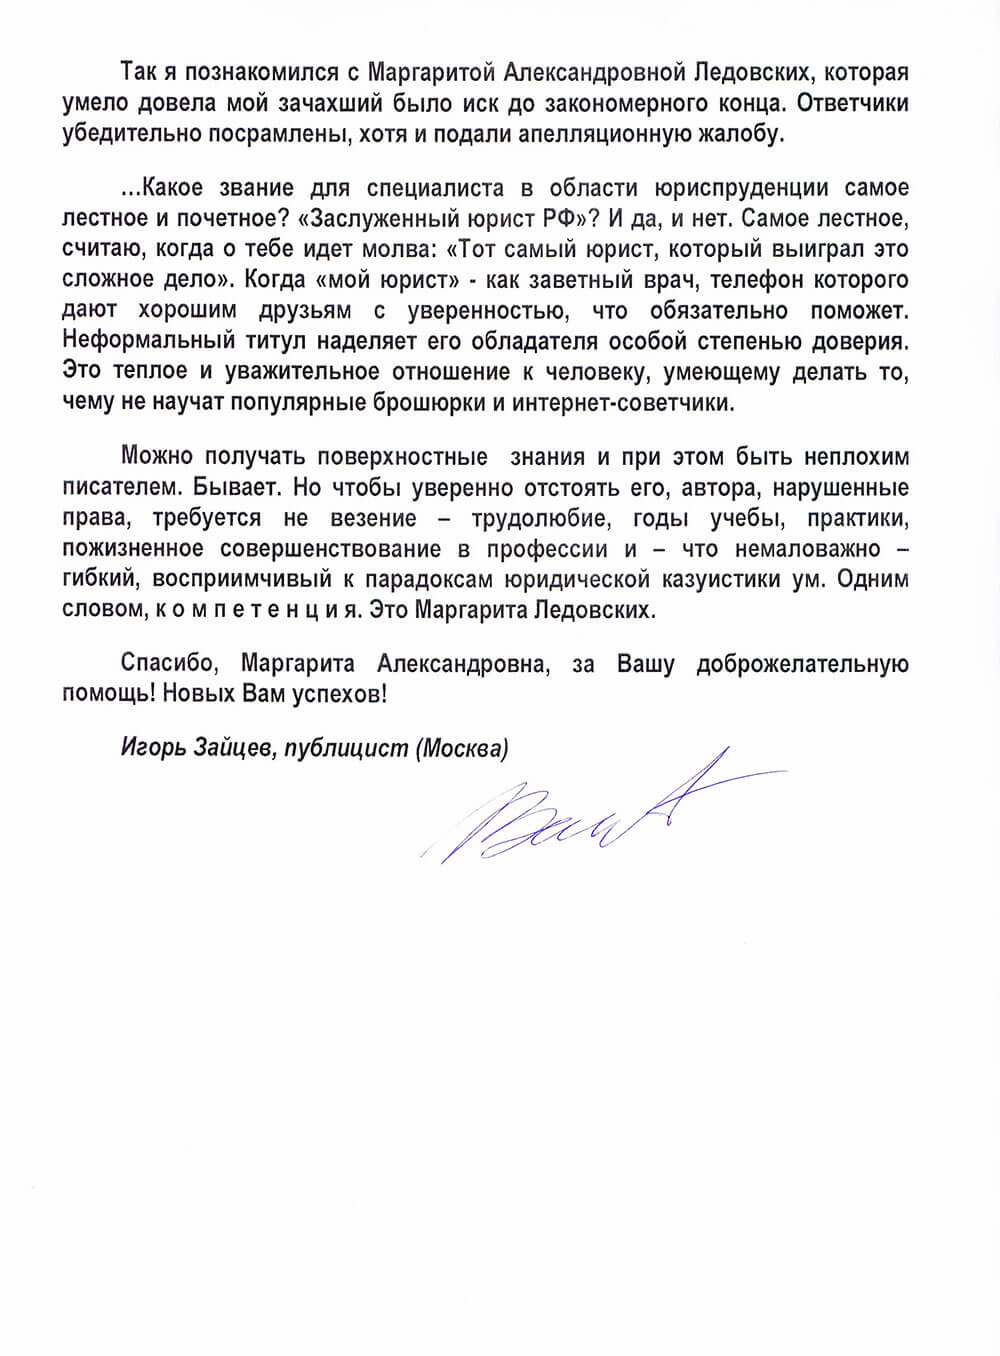 отзыв Зайцева о защите в суде по делу об авторском праве